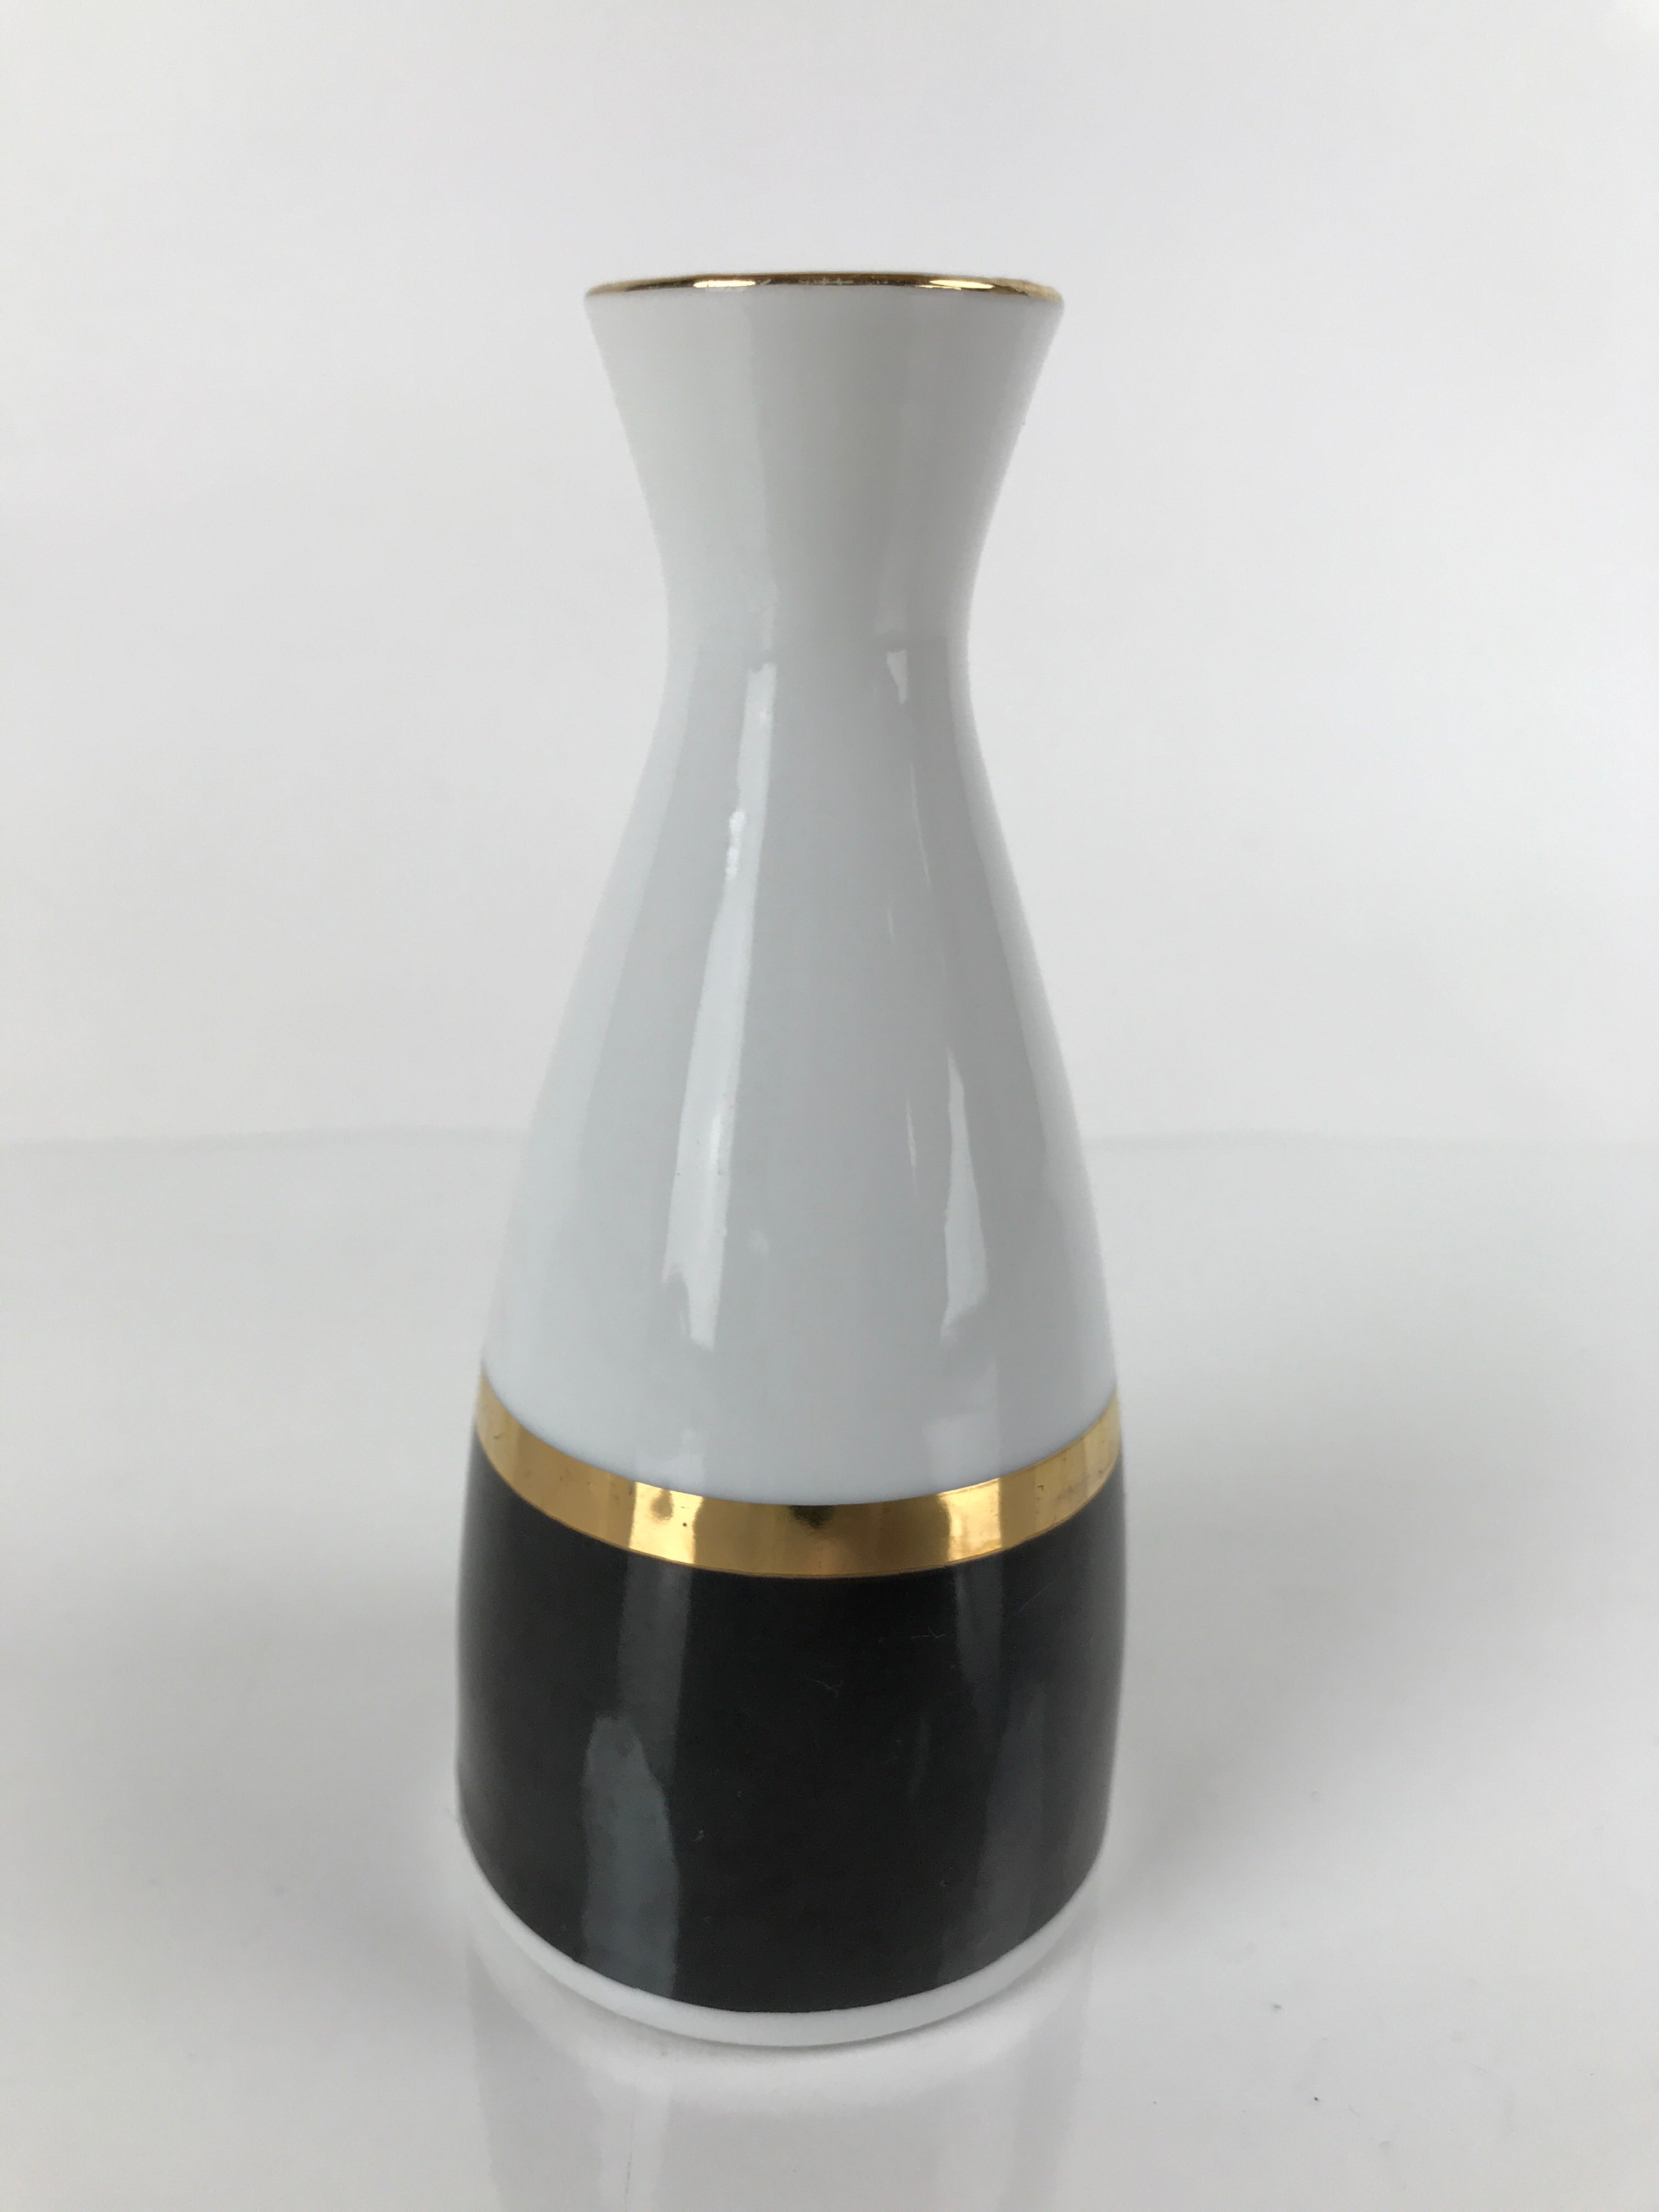 Japanese Porcelain Sake Bottle Tokkuri Vtg Ichi-Go Simple Black Gold White TS640